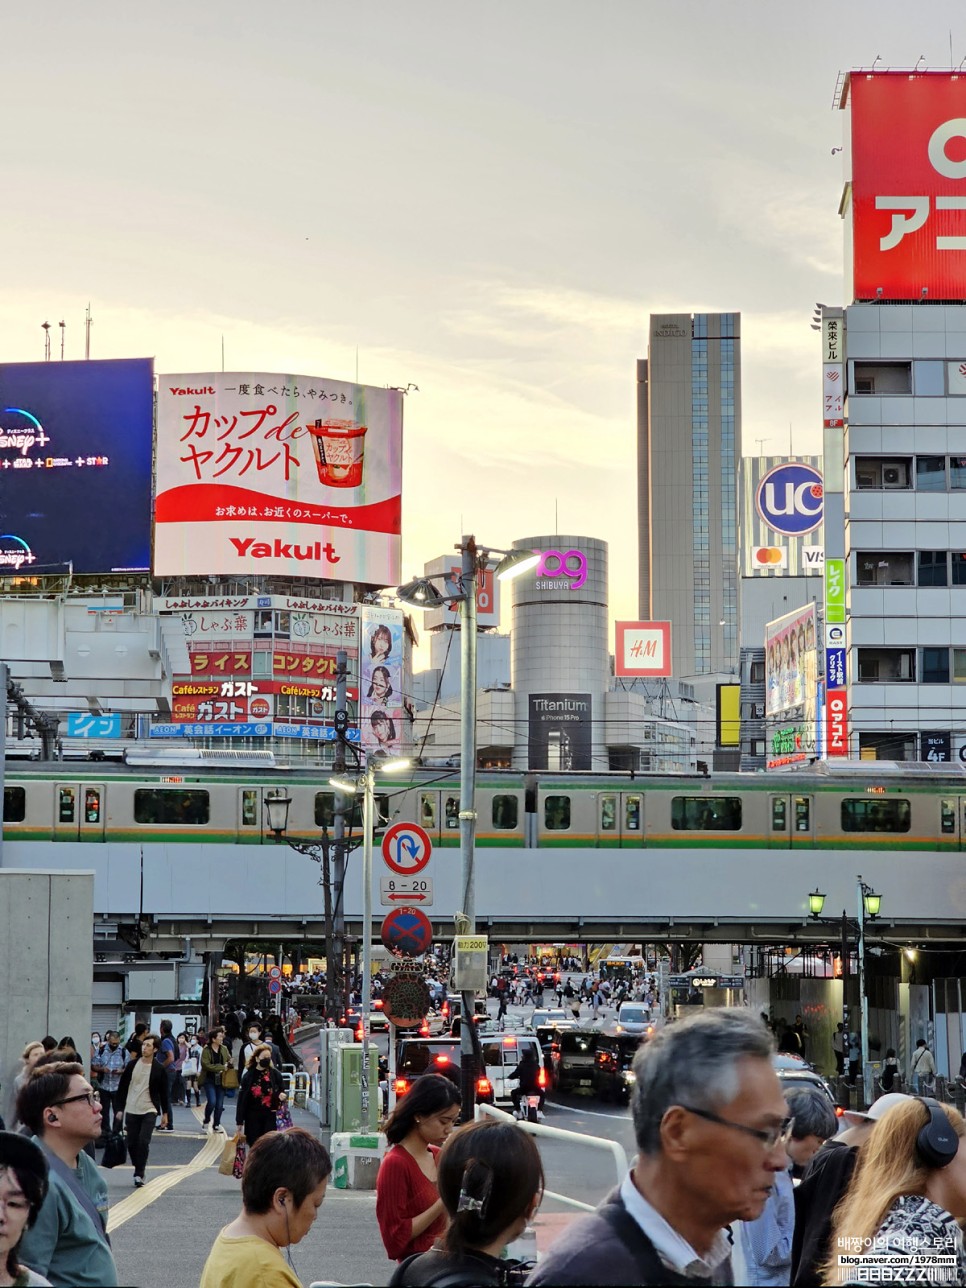 일본 유심 추천 잘 사용한 일본여행 유심칩 구매 후기 + 최신 도쿄 날씨